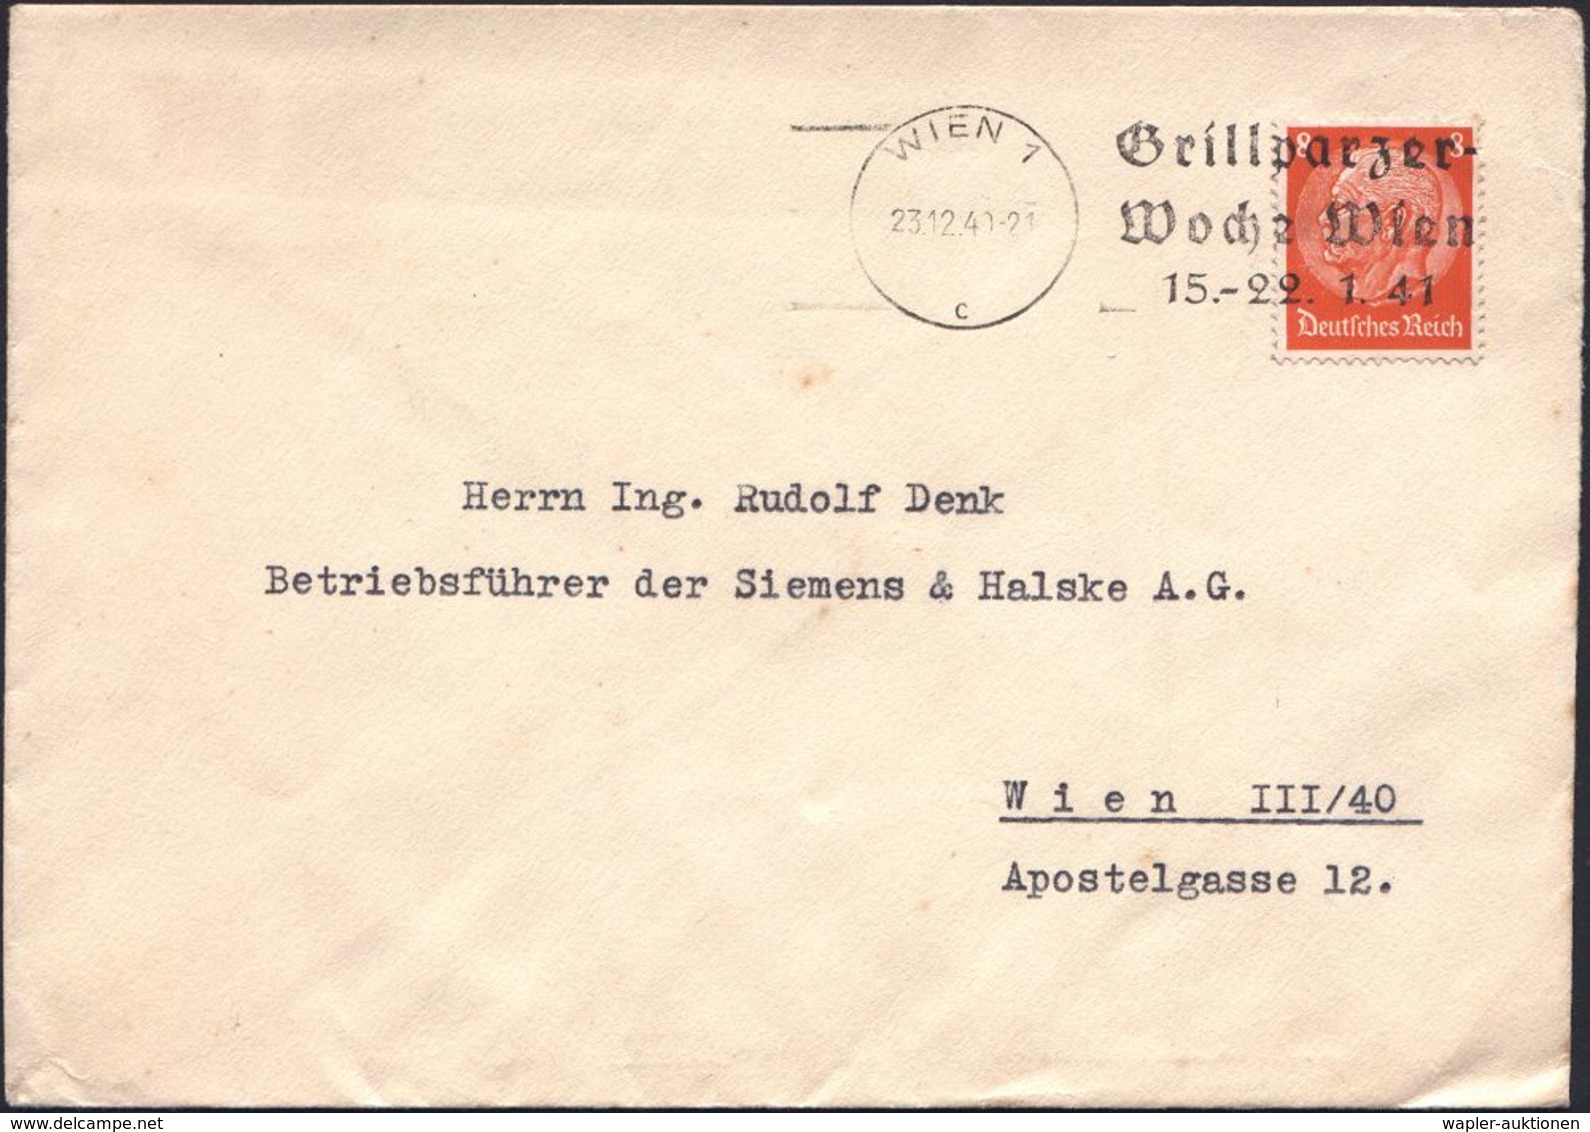 DEUTSCHSPRACHIGE DICHTER & LITERATUR : WIEN 1/ C/ Grillparzer-/ Woche Wien/ 15.-22.1.41 1941 (23.12.) Seltener MWSt, öst - Scrittori